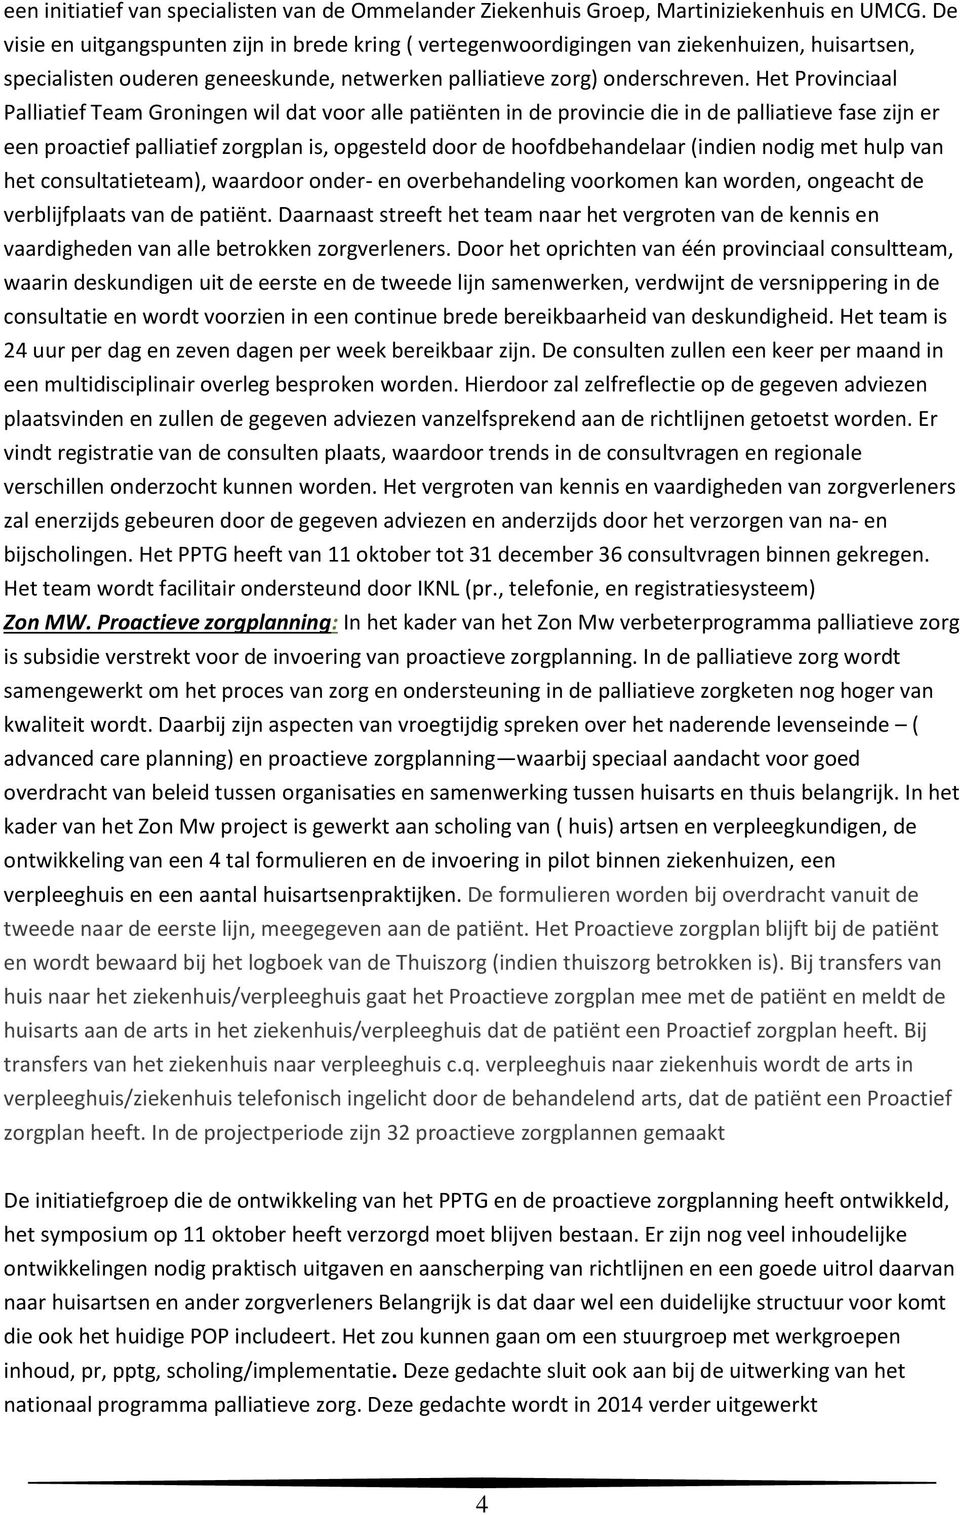 Het Provinciaal Palliatief Team Groningen wil dat voor alle patiënten in de provincie die in de palliatieve fase zijn er een proactief palliatief zorgplan is, opgesteld door de hoofdbehandelaar